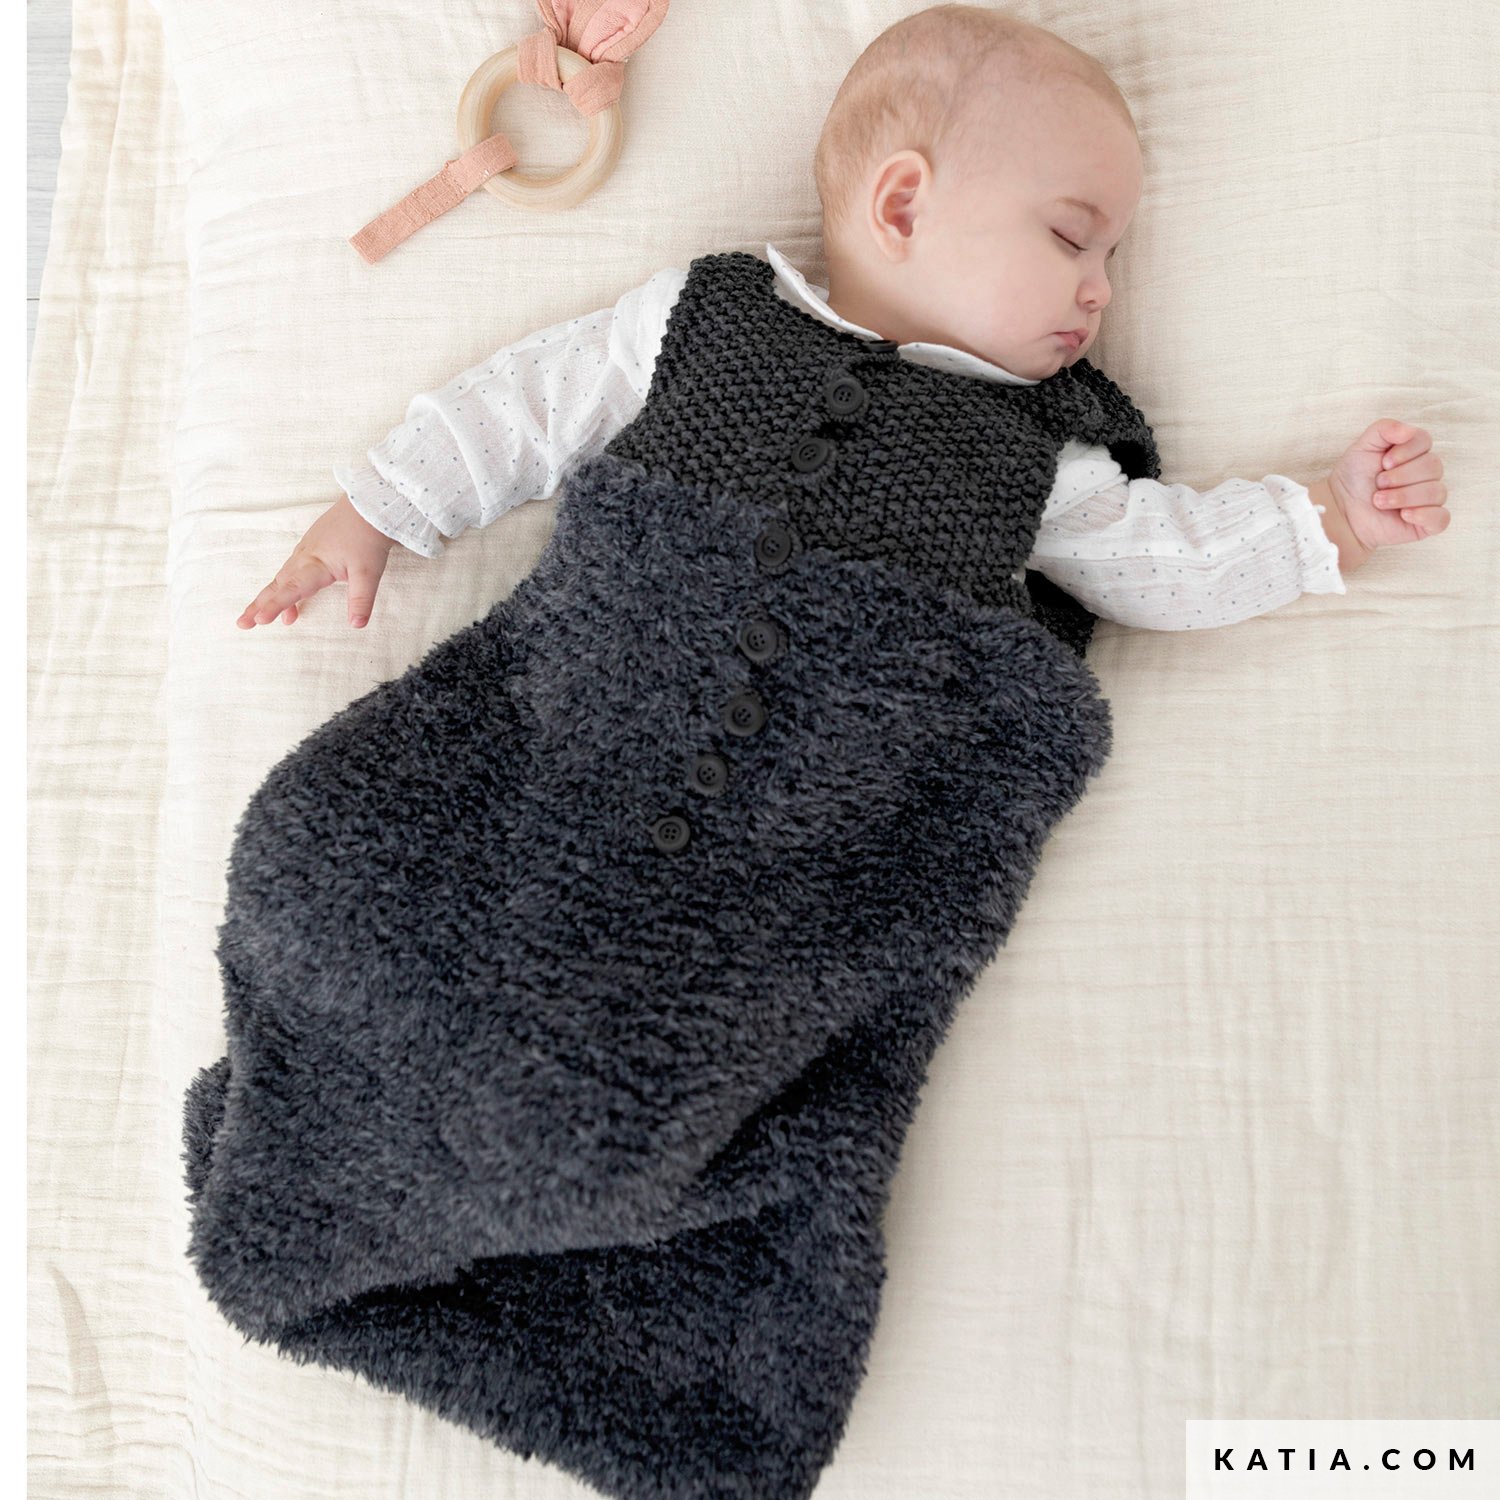 baby sleep sack winter